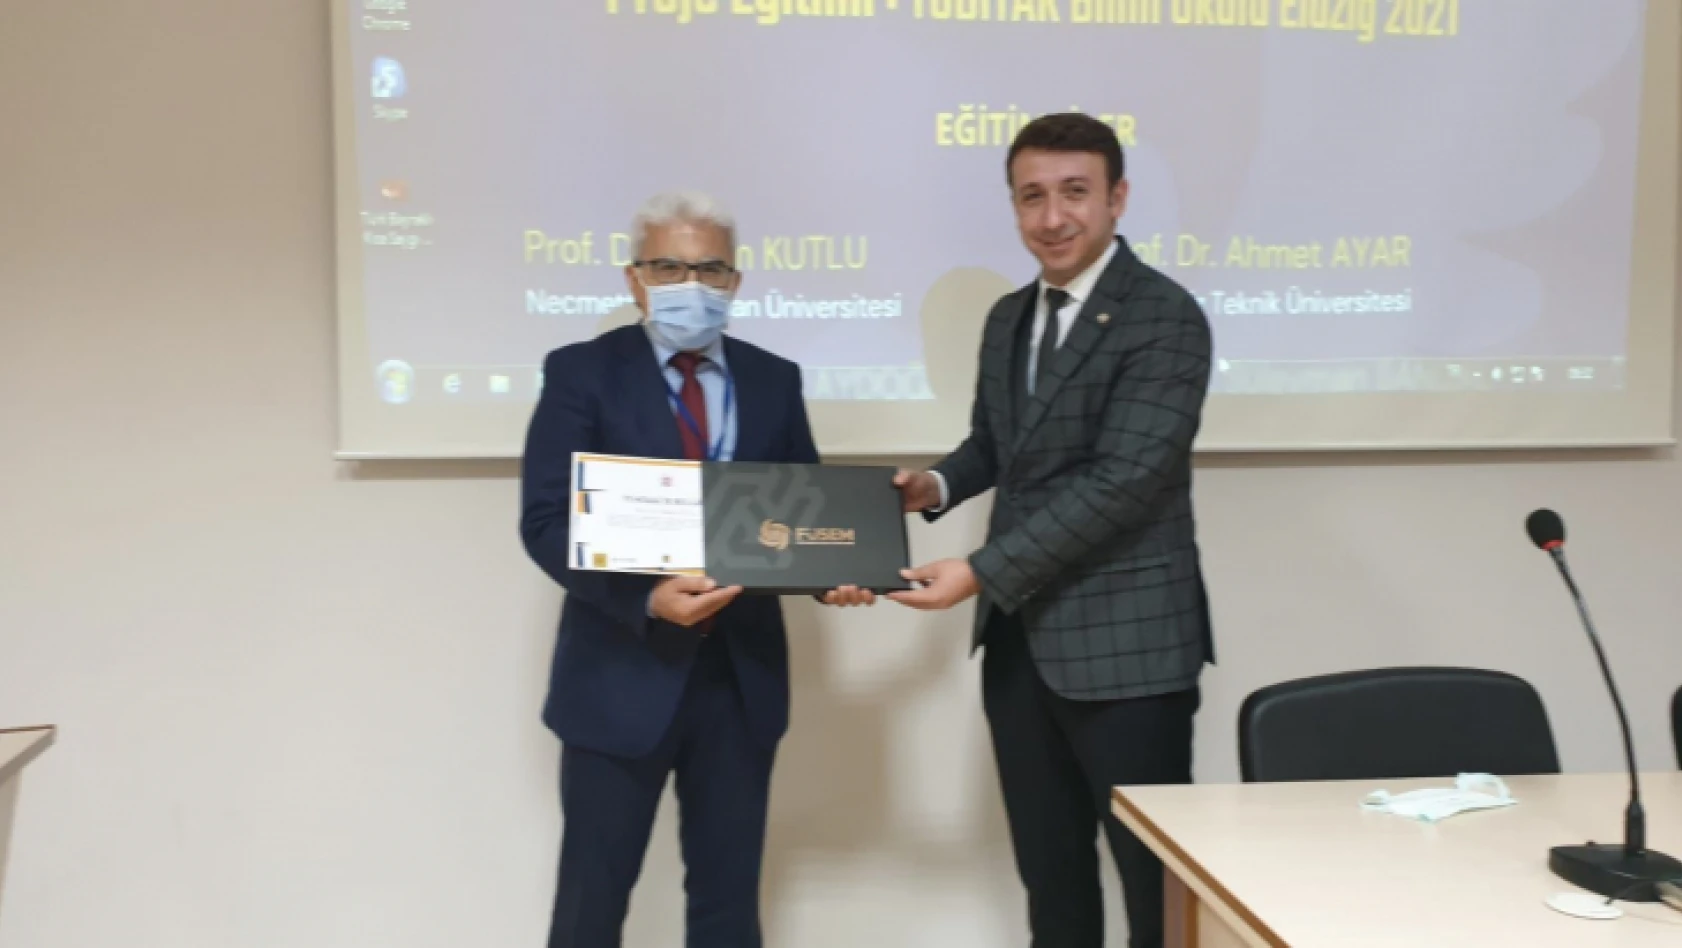 Akademik Becerilere Giriş ve Proje Yönetimi' TÜBİTAK Bilim Okulu Elazığ 2021 Eğitimleri Fırat Üniversitesi'nde Başladı.